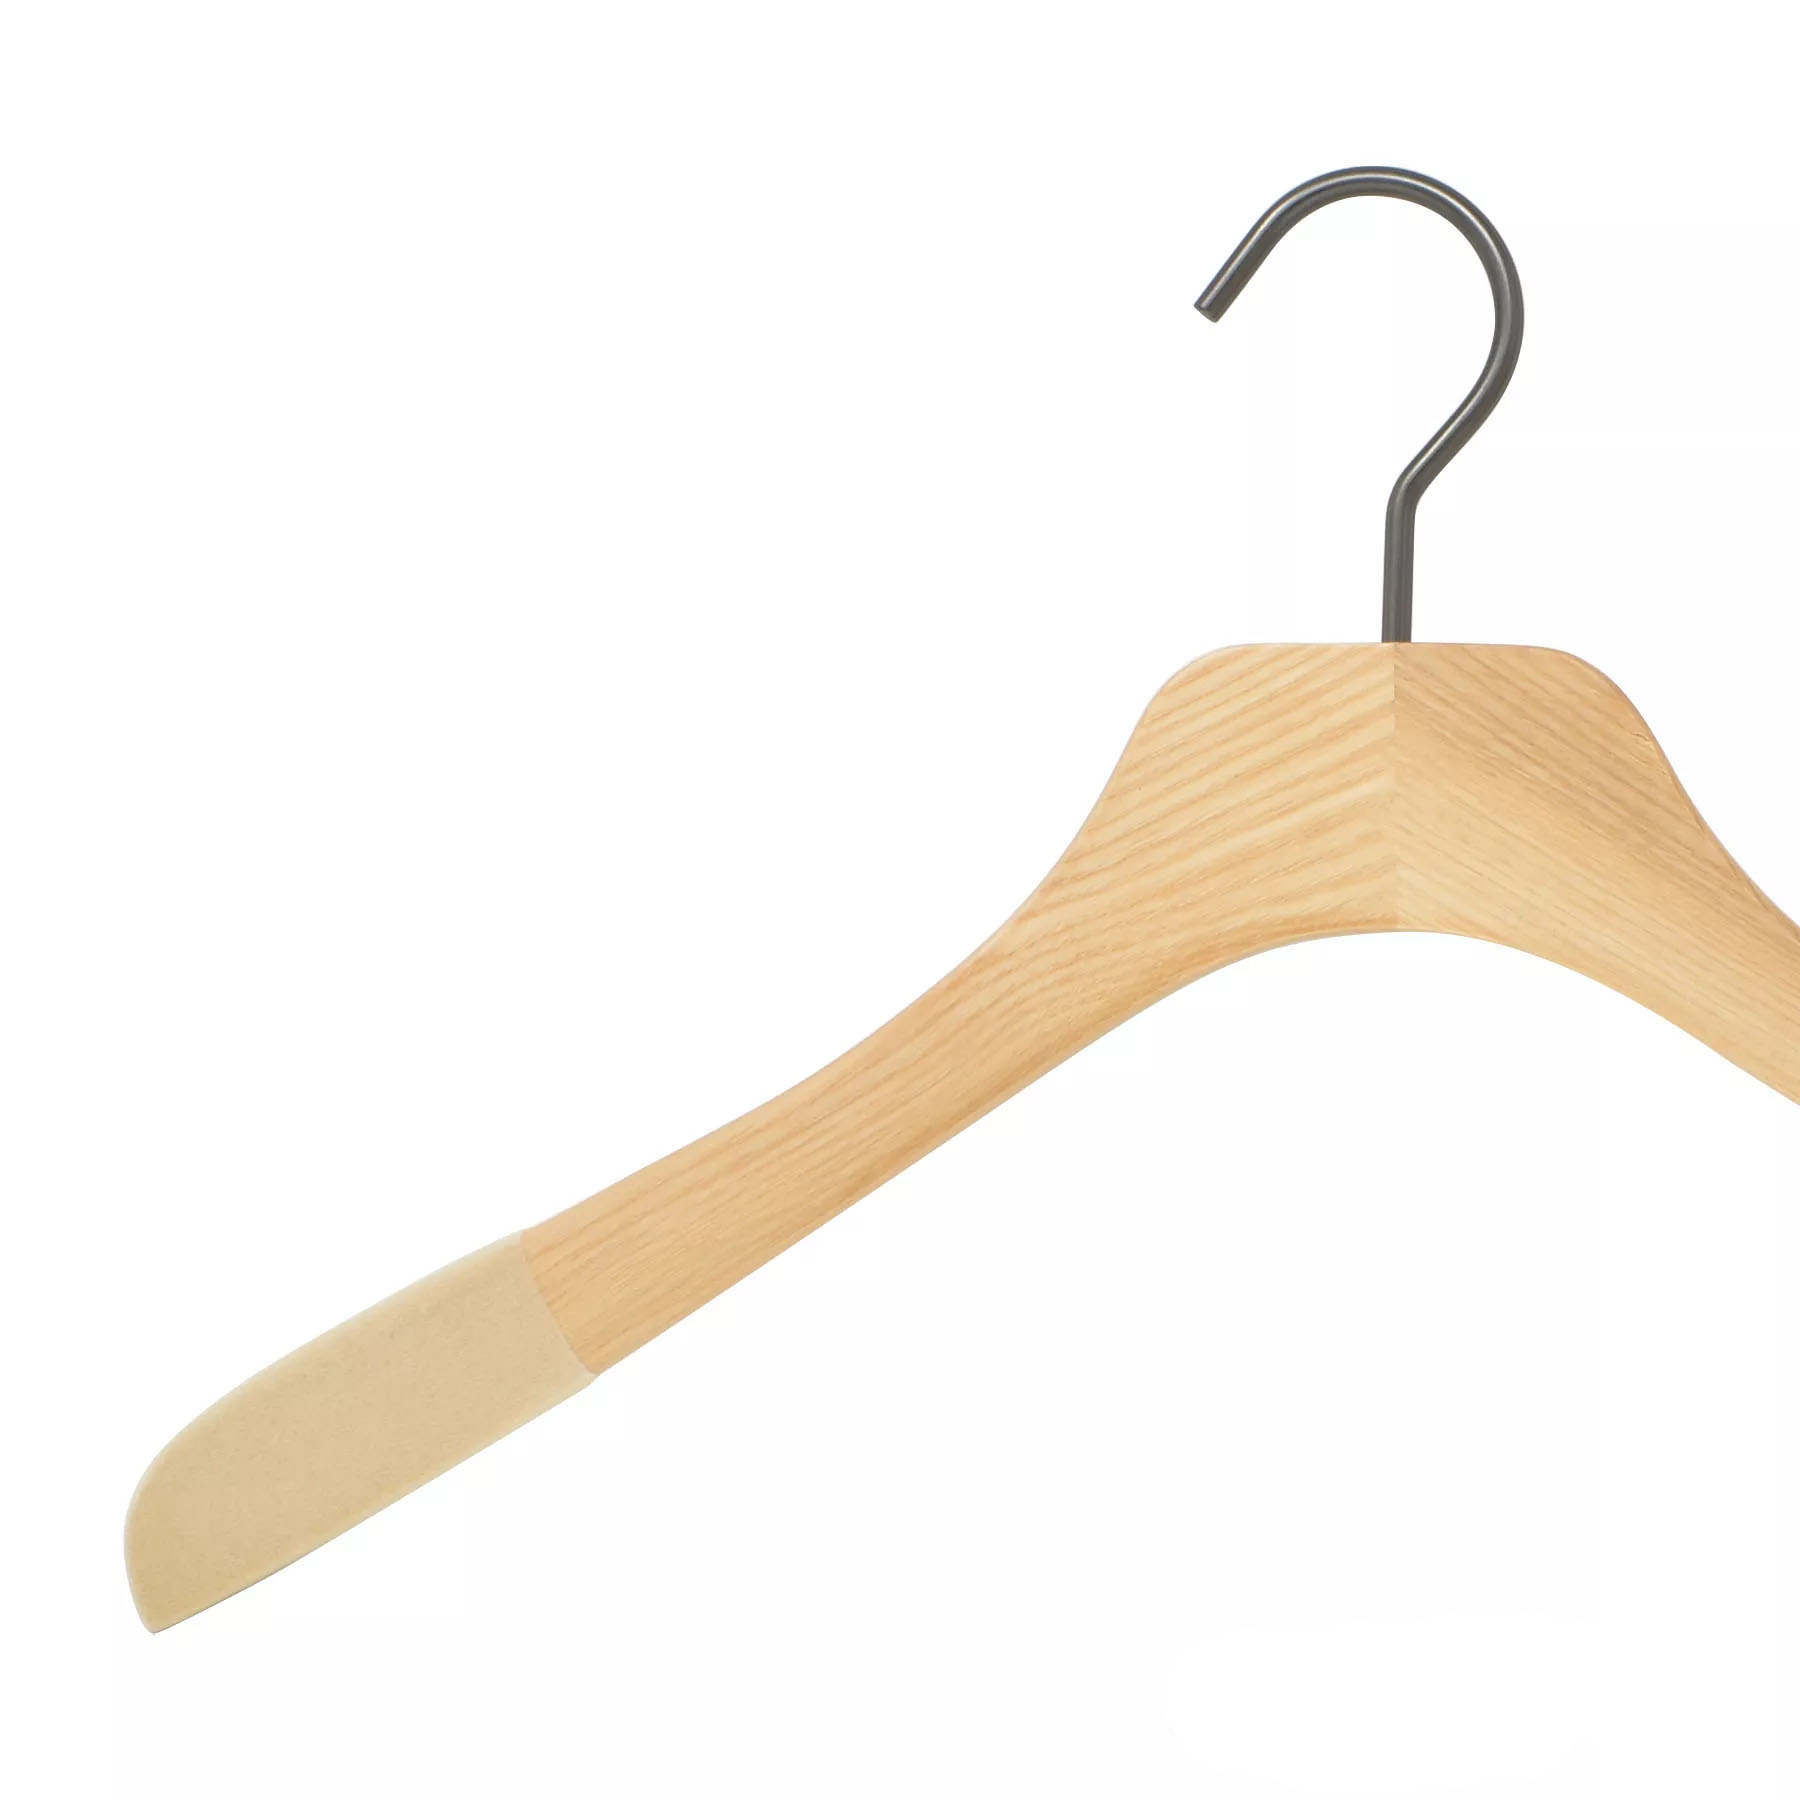 Shirt wooden hanger for man